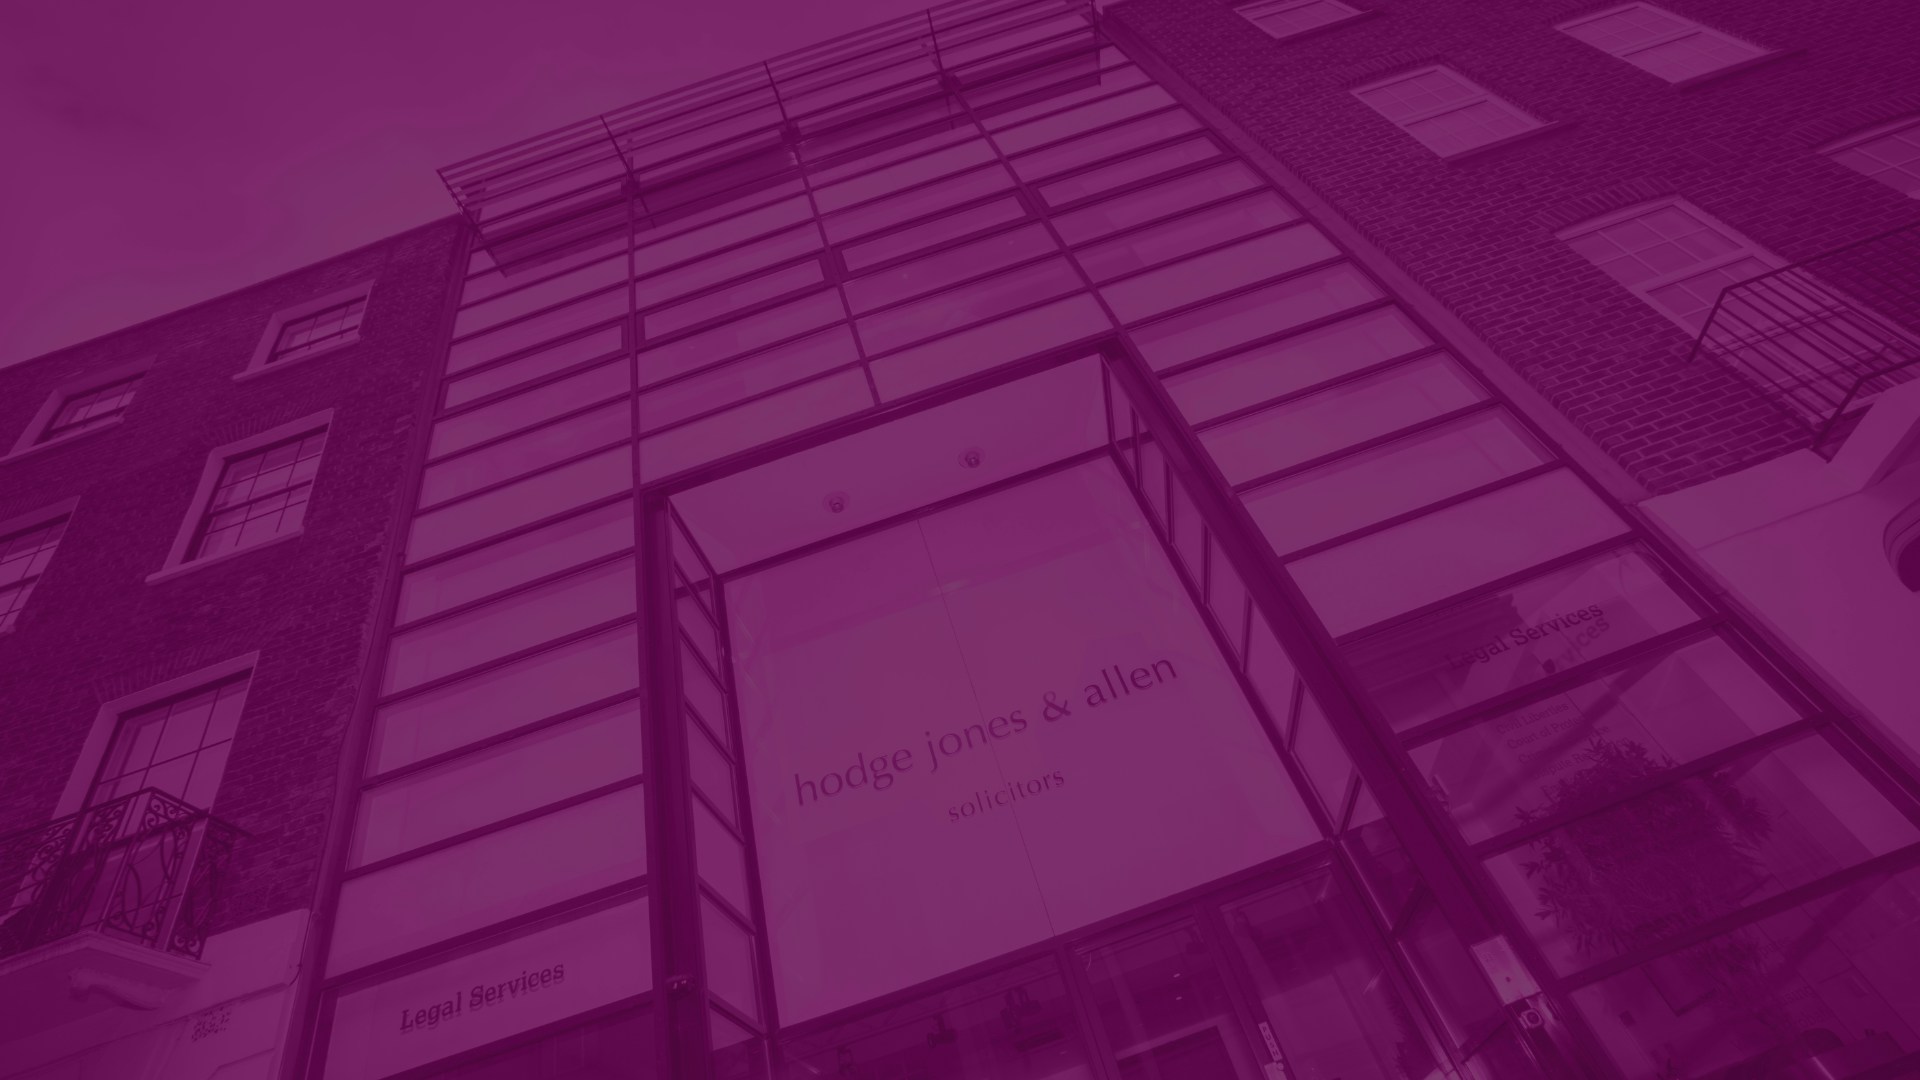 Hodge, Jones & Allen- Background art (upscale building in a purple transparent colour)